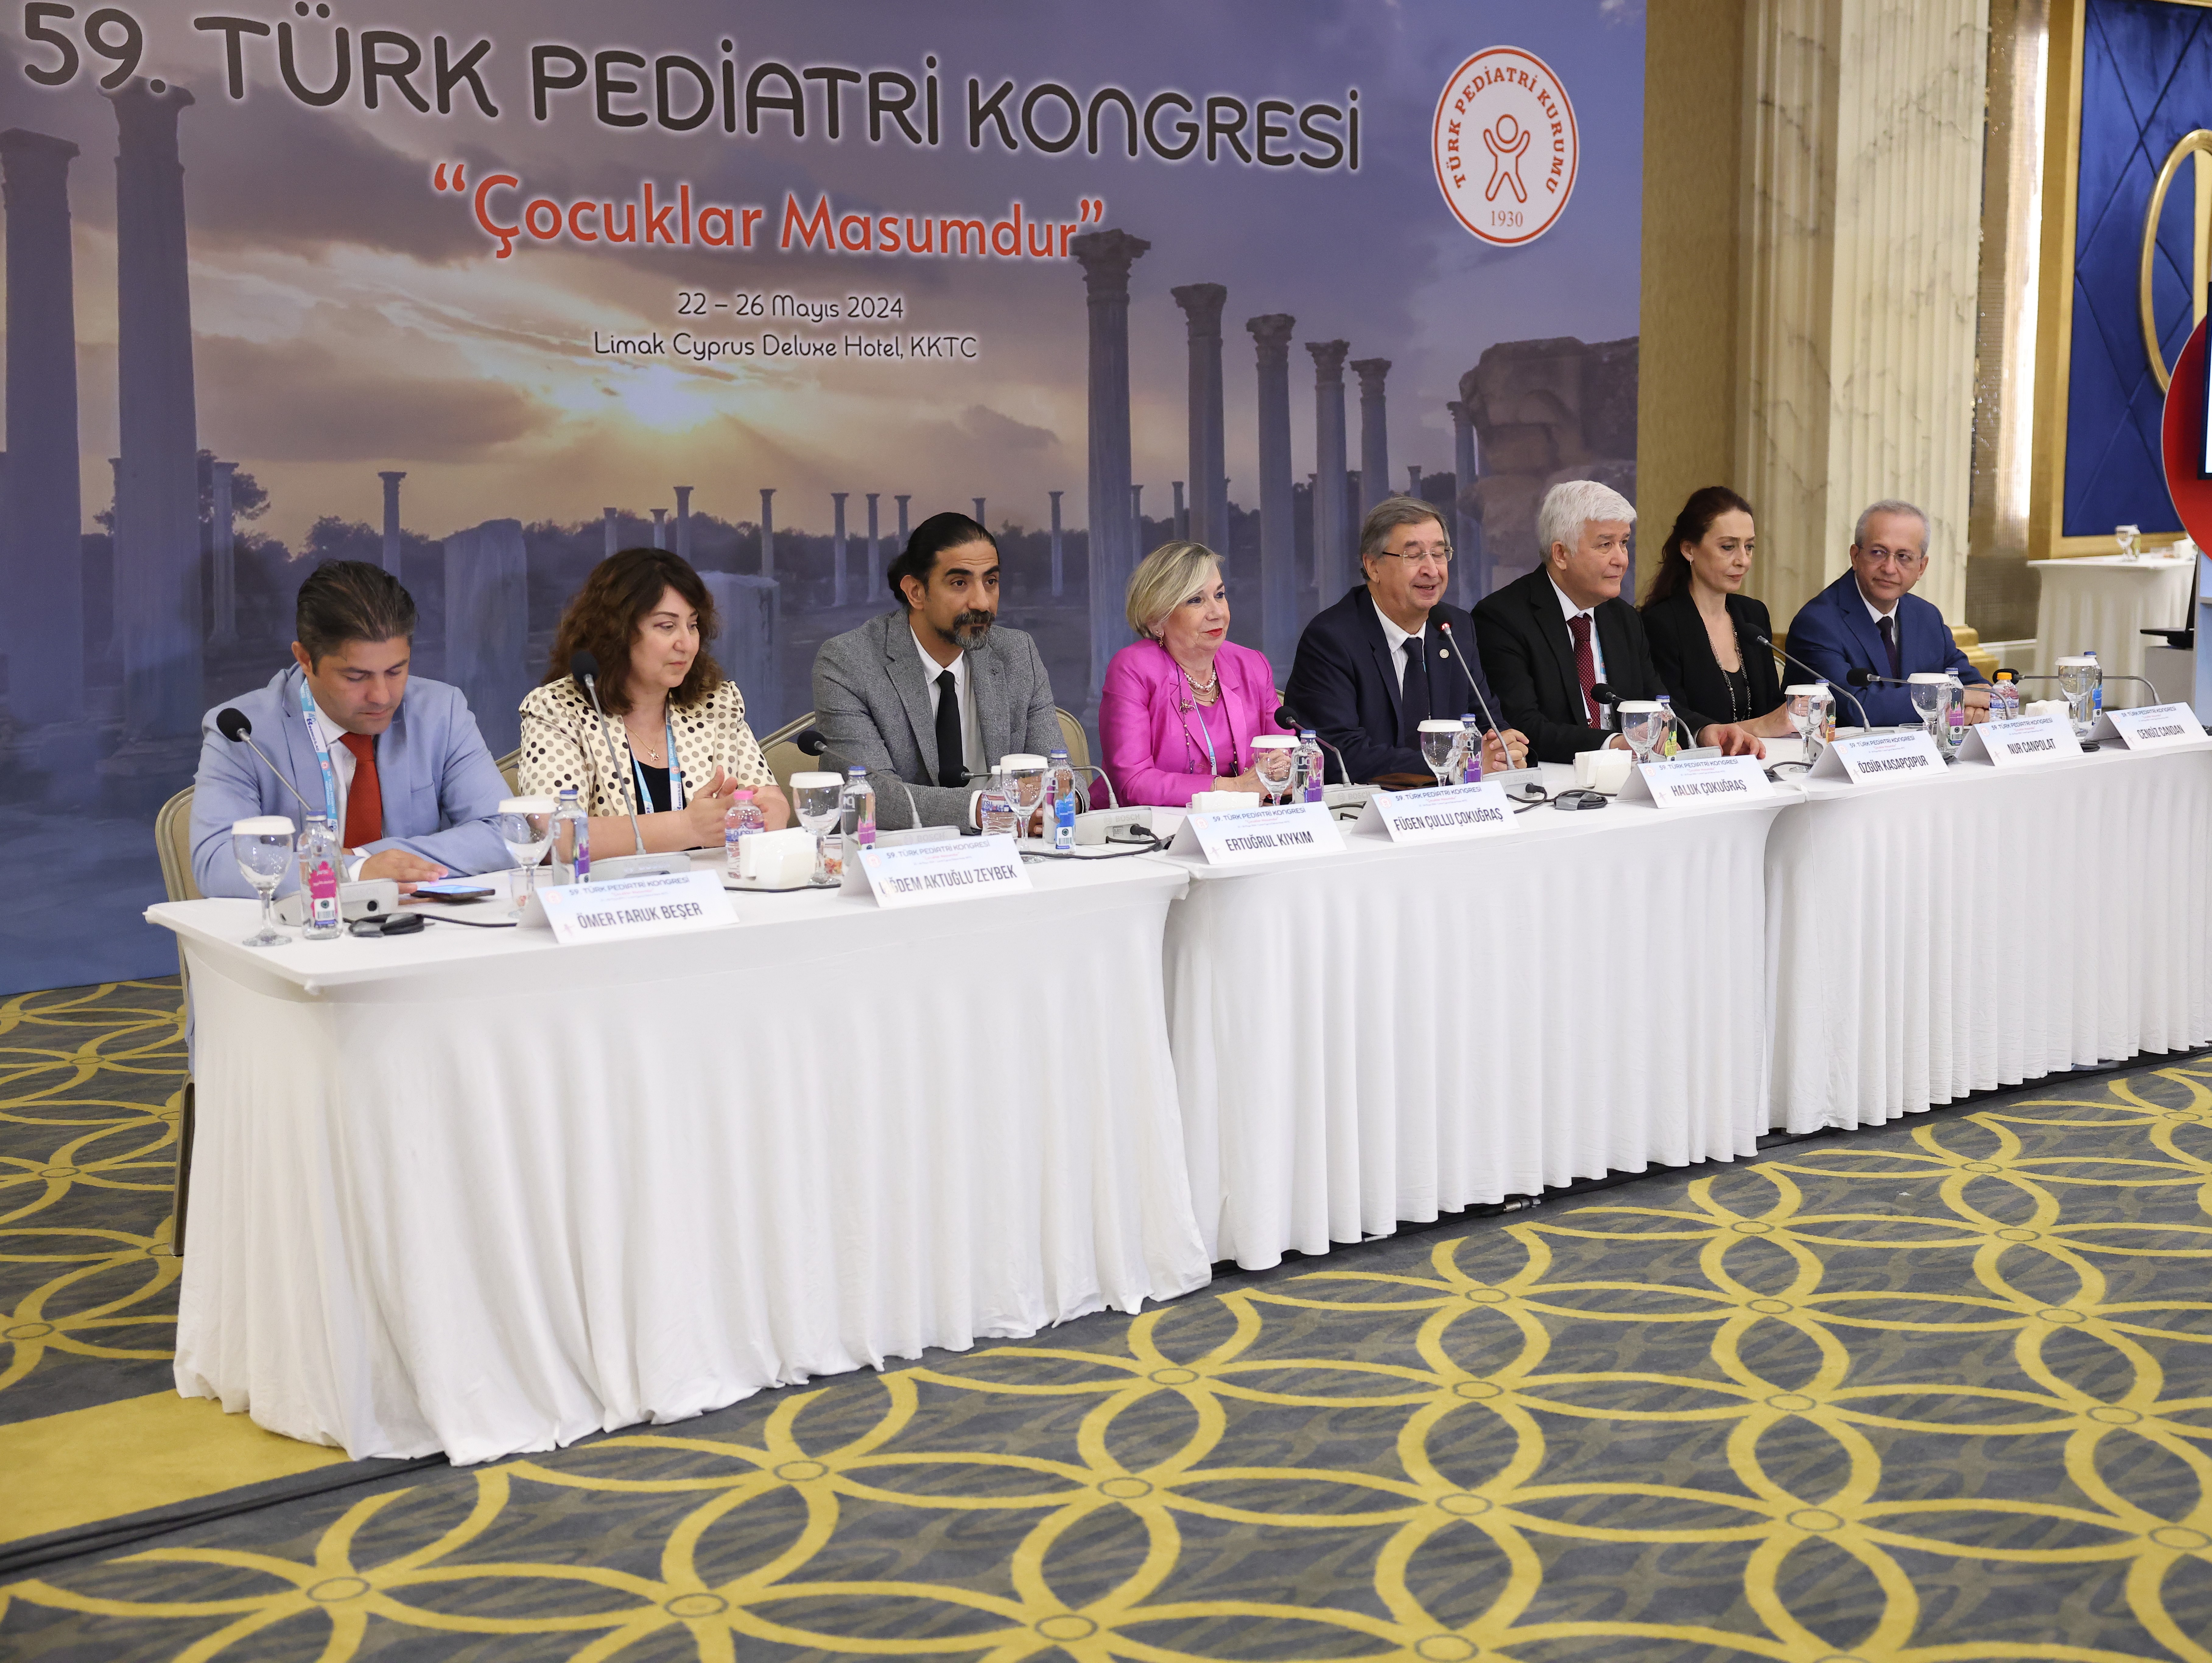 59. Türk Pediatri Kongresi’nde çocuk sağlığının toplum için önemine dikkat çekildi